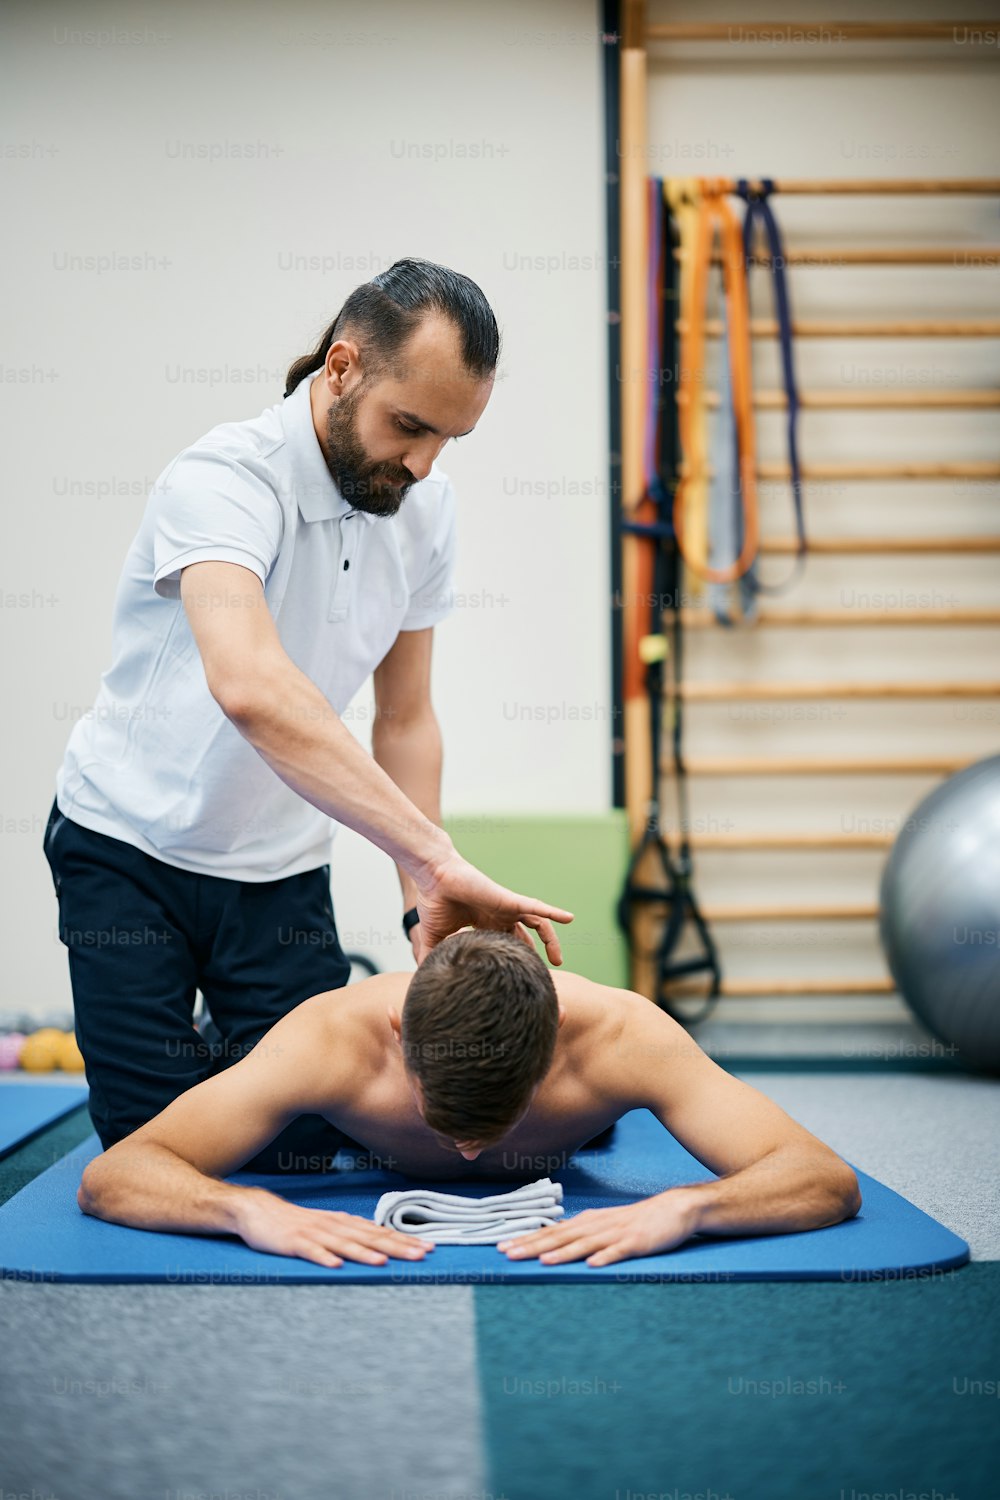 Kinésithérapeute massant le cou de l’athlète pendant un traitement de rééducation au club de santé.